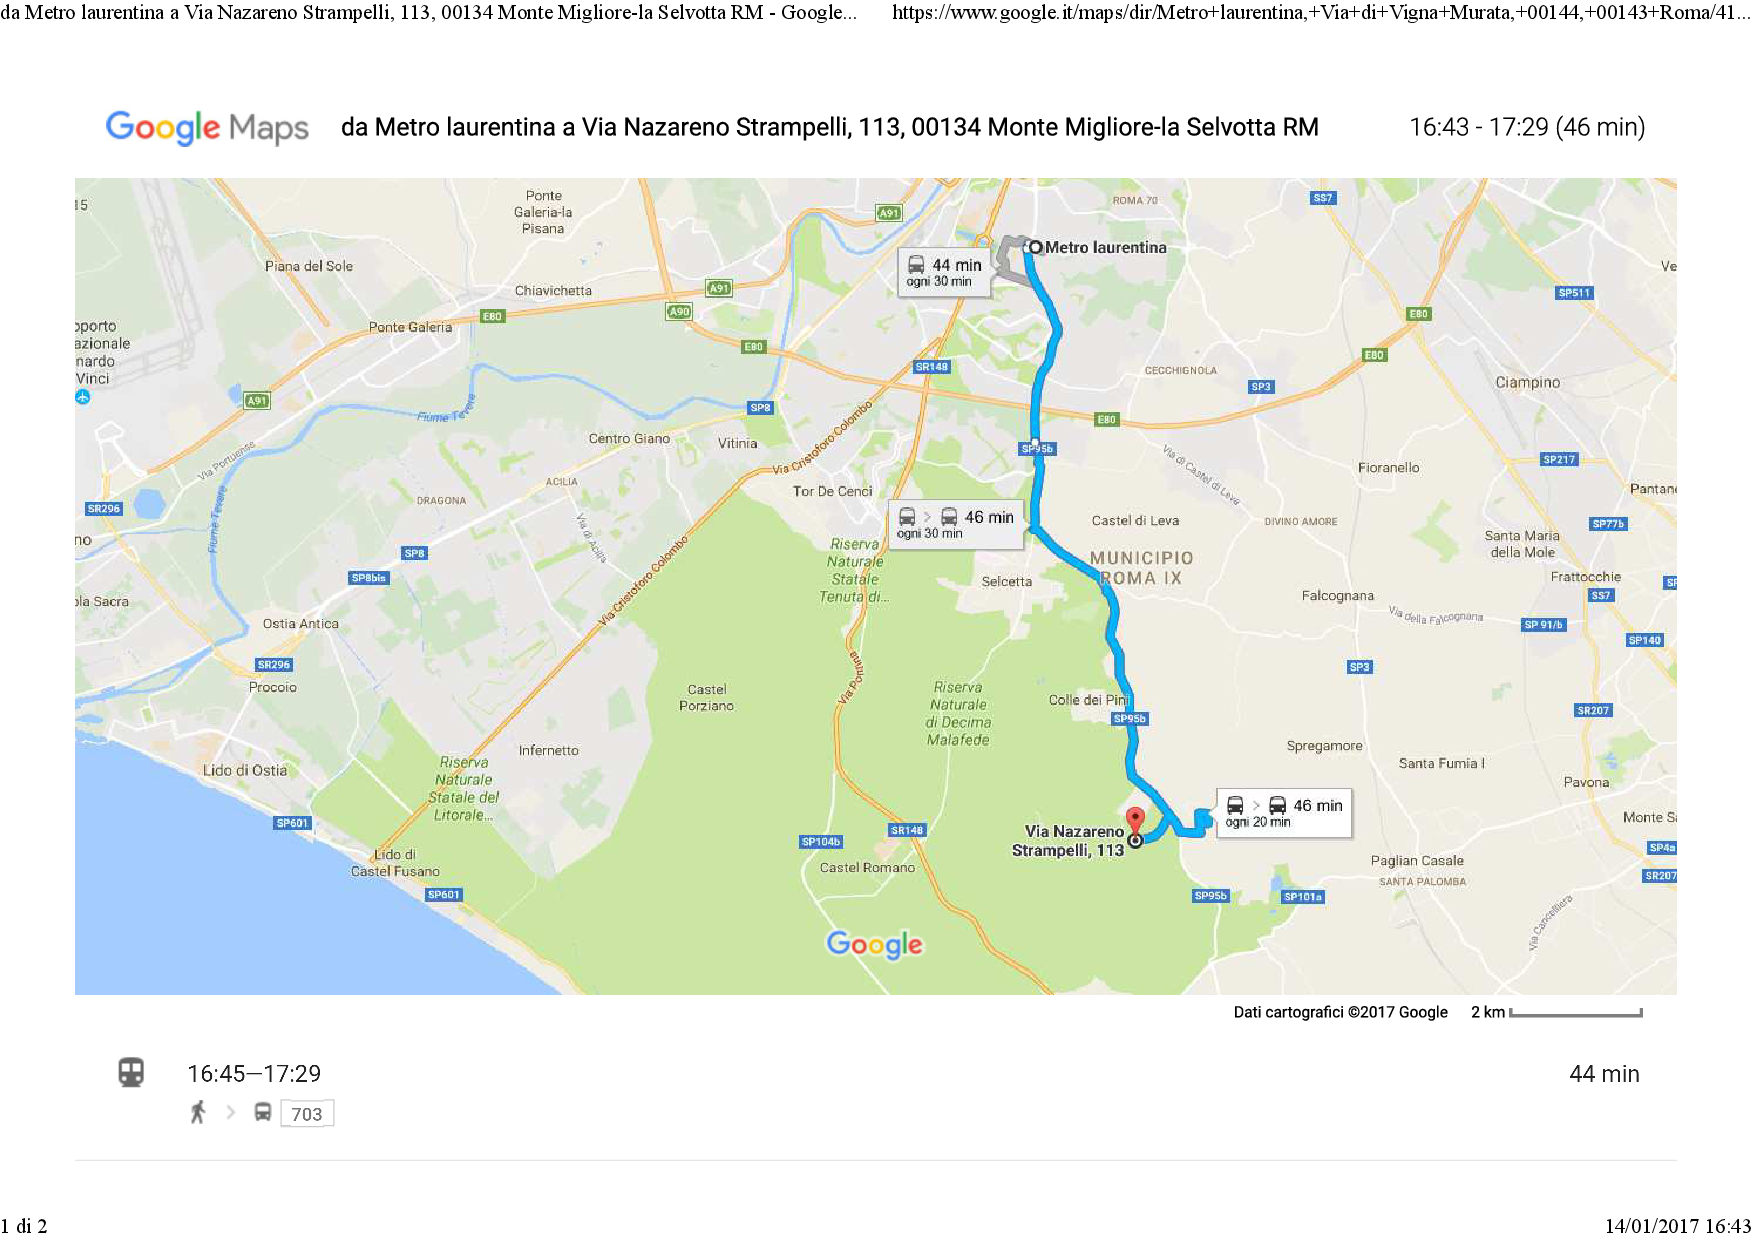 da Metro laurentina a Via Nazareno Strampelli, 113, 00134 Monte Migliore-la Selvotta RM - Google Maps.png